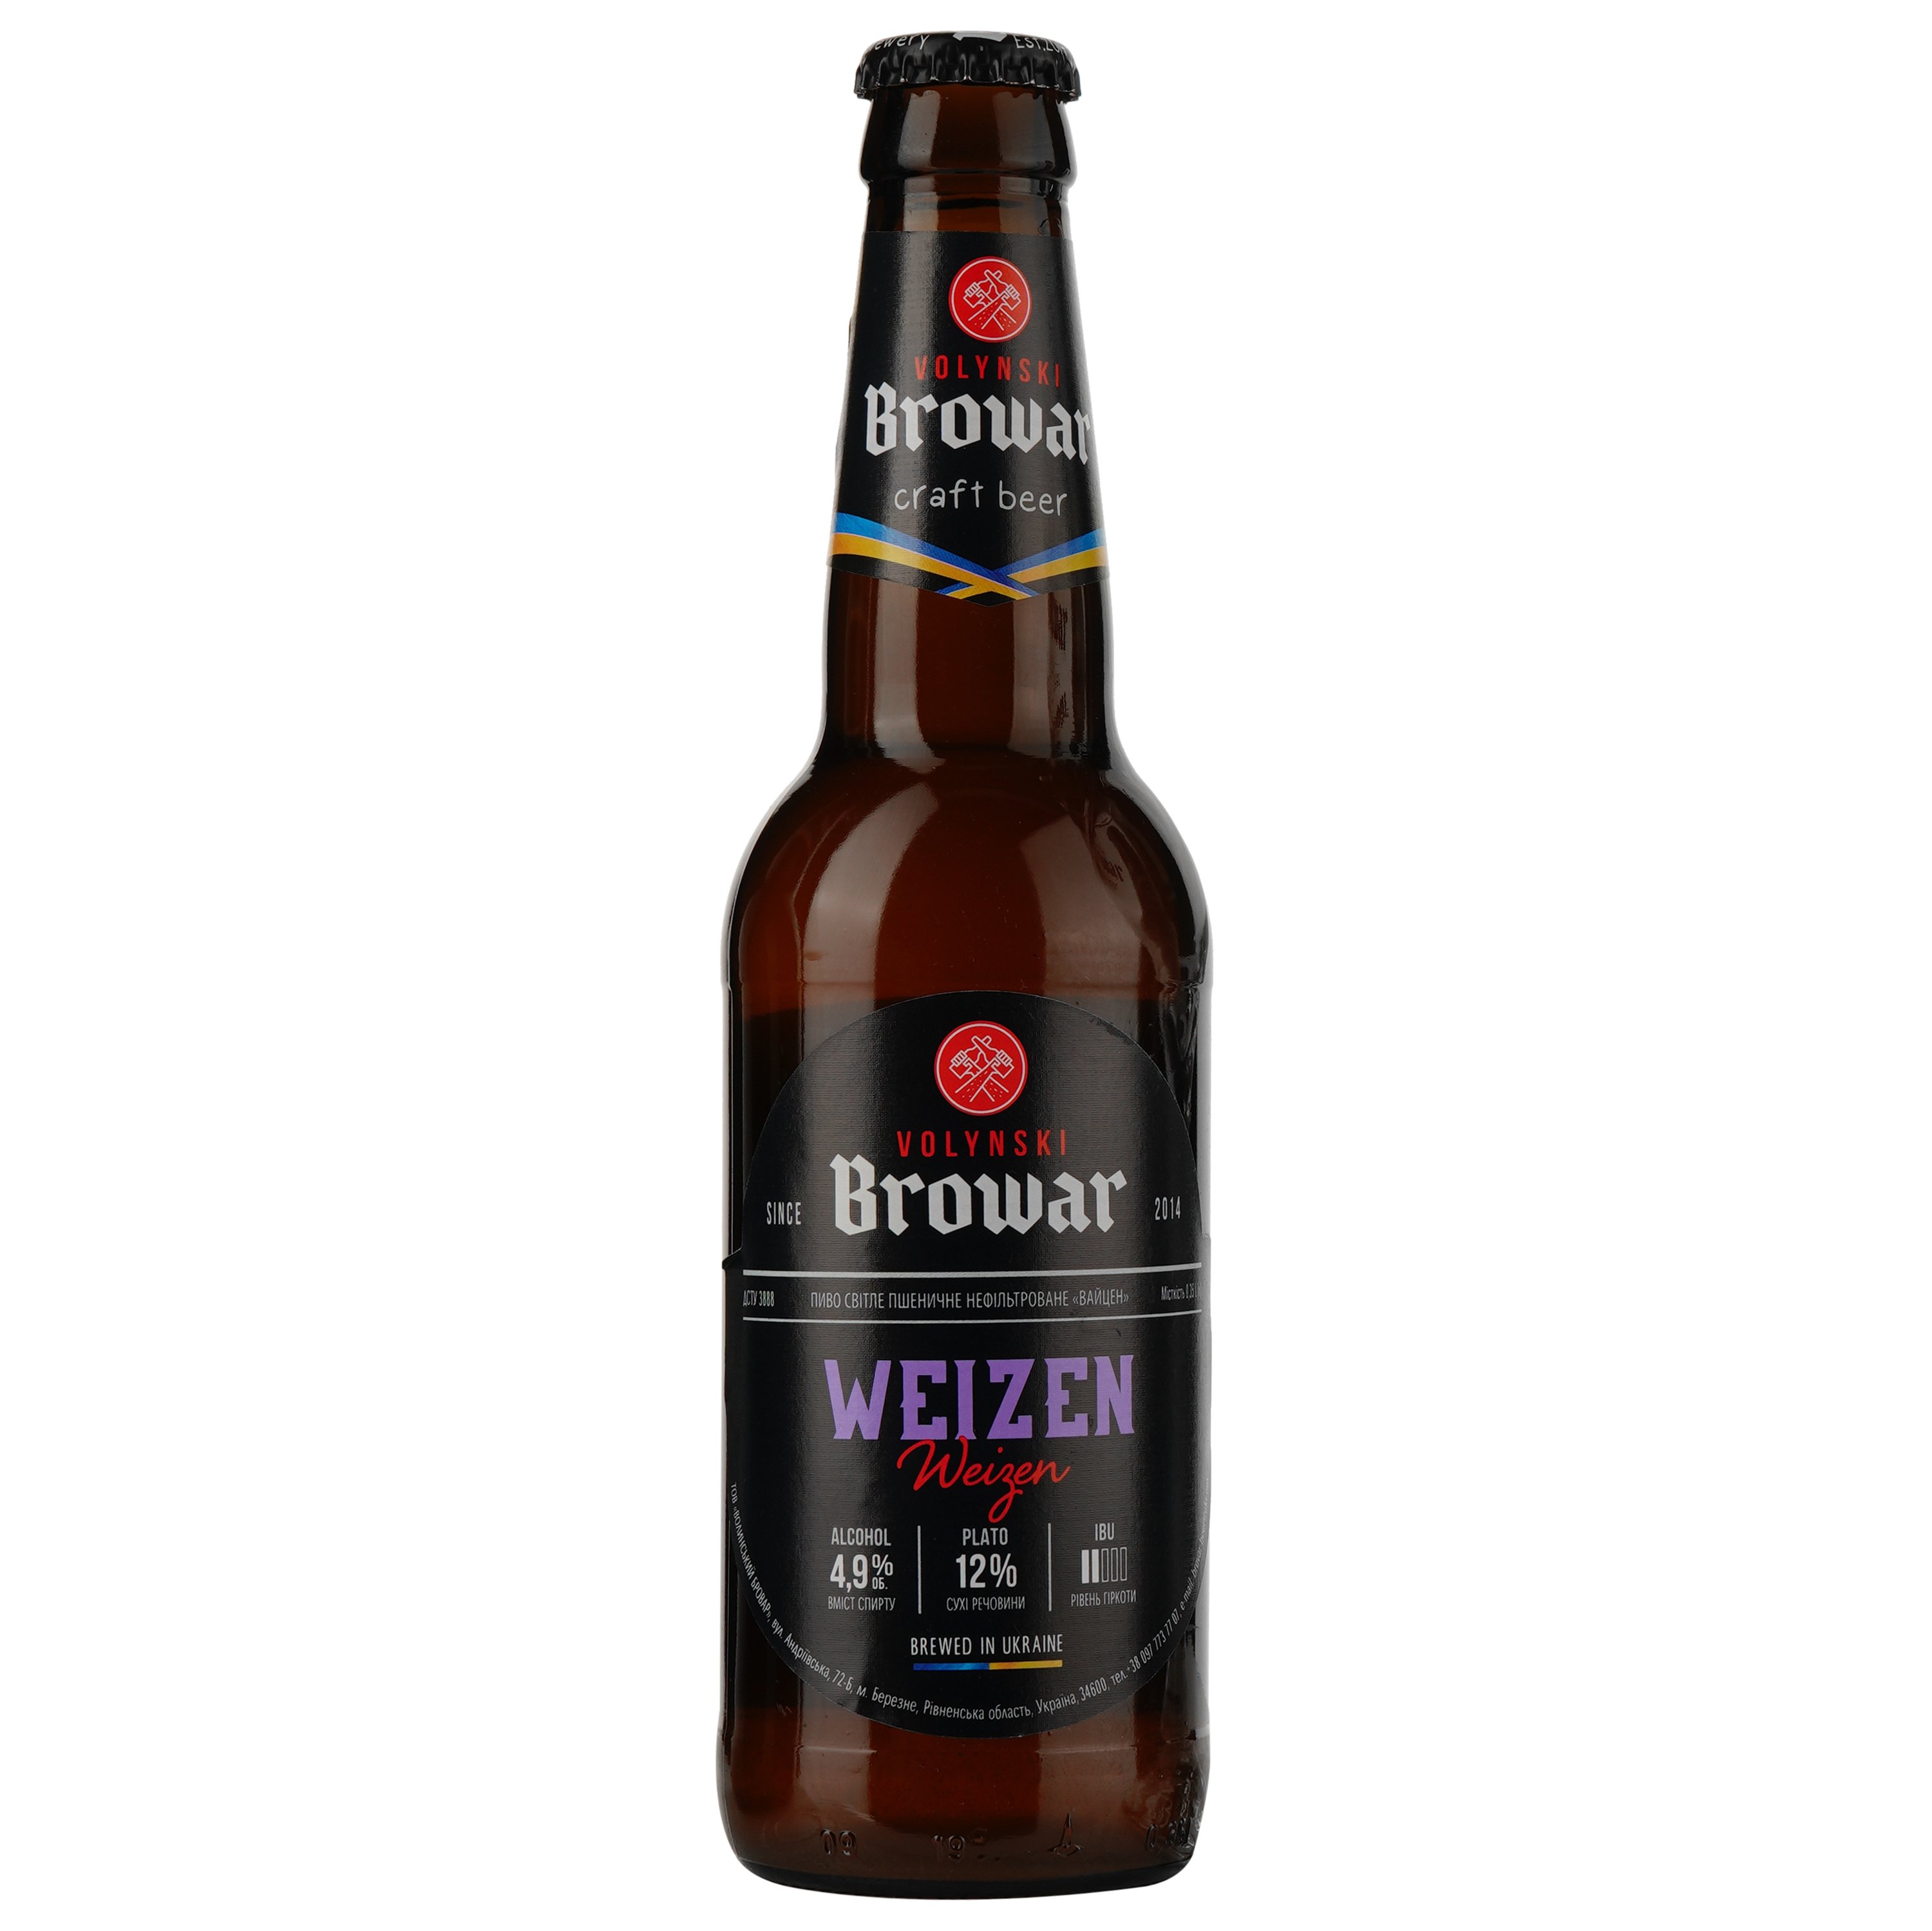 Подарочный набор пива Volynski Browar, 3,8-5,8%, 1,4 л (4 шт. по 0,35 л) + Бокал Somelier, 0,4 л - фото 4